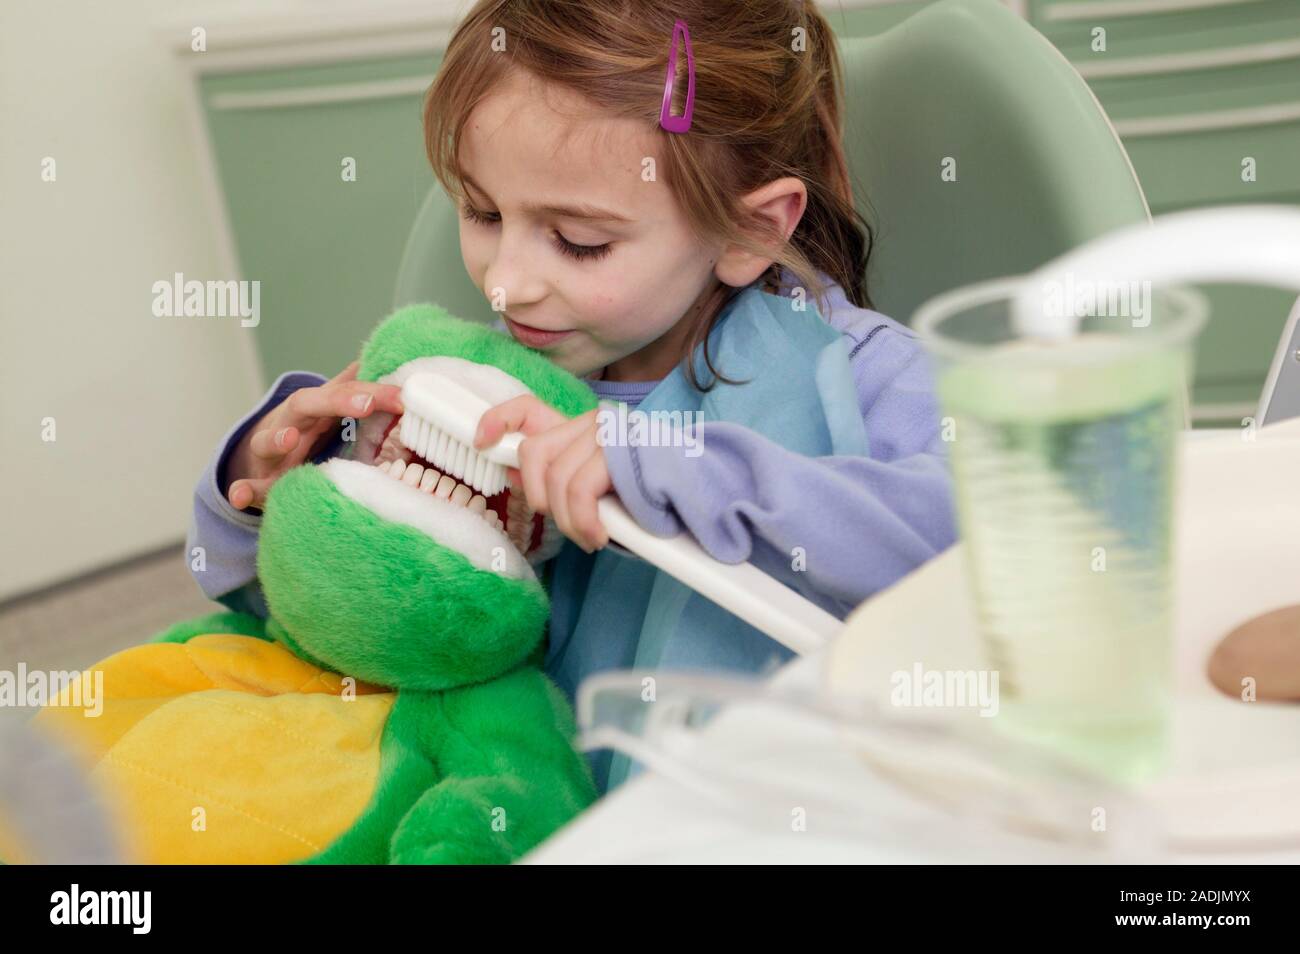 Riesen Zahnbürste. Mädchen üben ihr Bürsten Fähigkeiten auf ein weiches  Spielzeug. Ein riesiger zahnbürste wird verwendet, weil es die Bedeutung  der Bürsten illustriert und Stockfotografie - Alamy